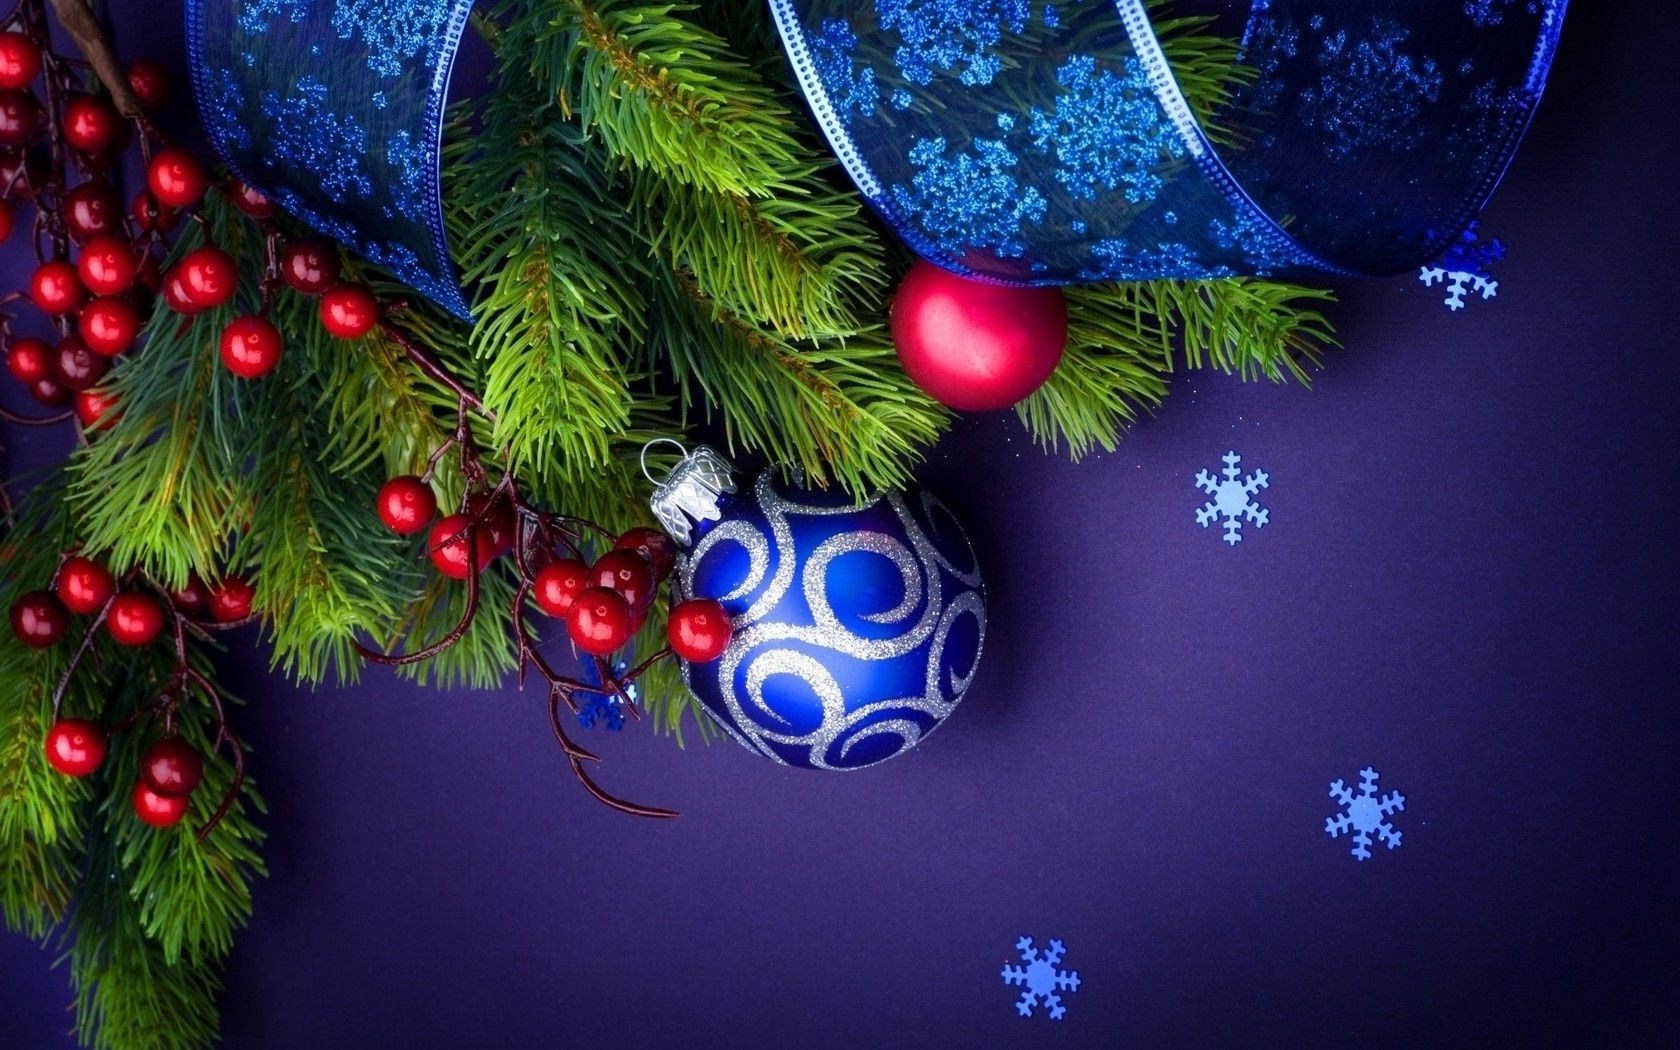 новый год рождество зима мяч светит украшения сосна сфера праздник пихта дерево блестят мерри браслет висит витиеватый эвергрин хвойные нить ели